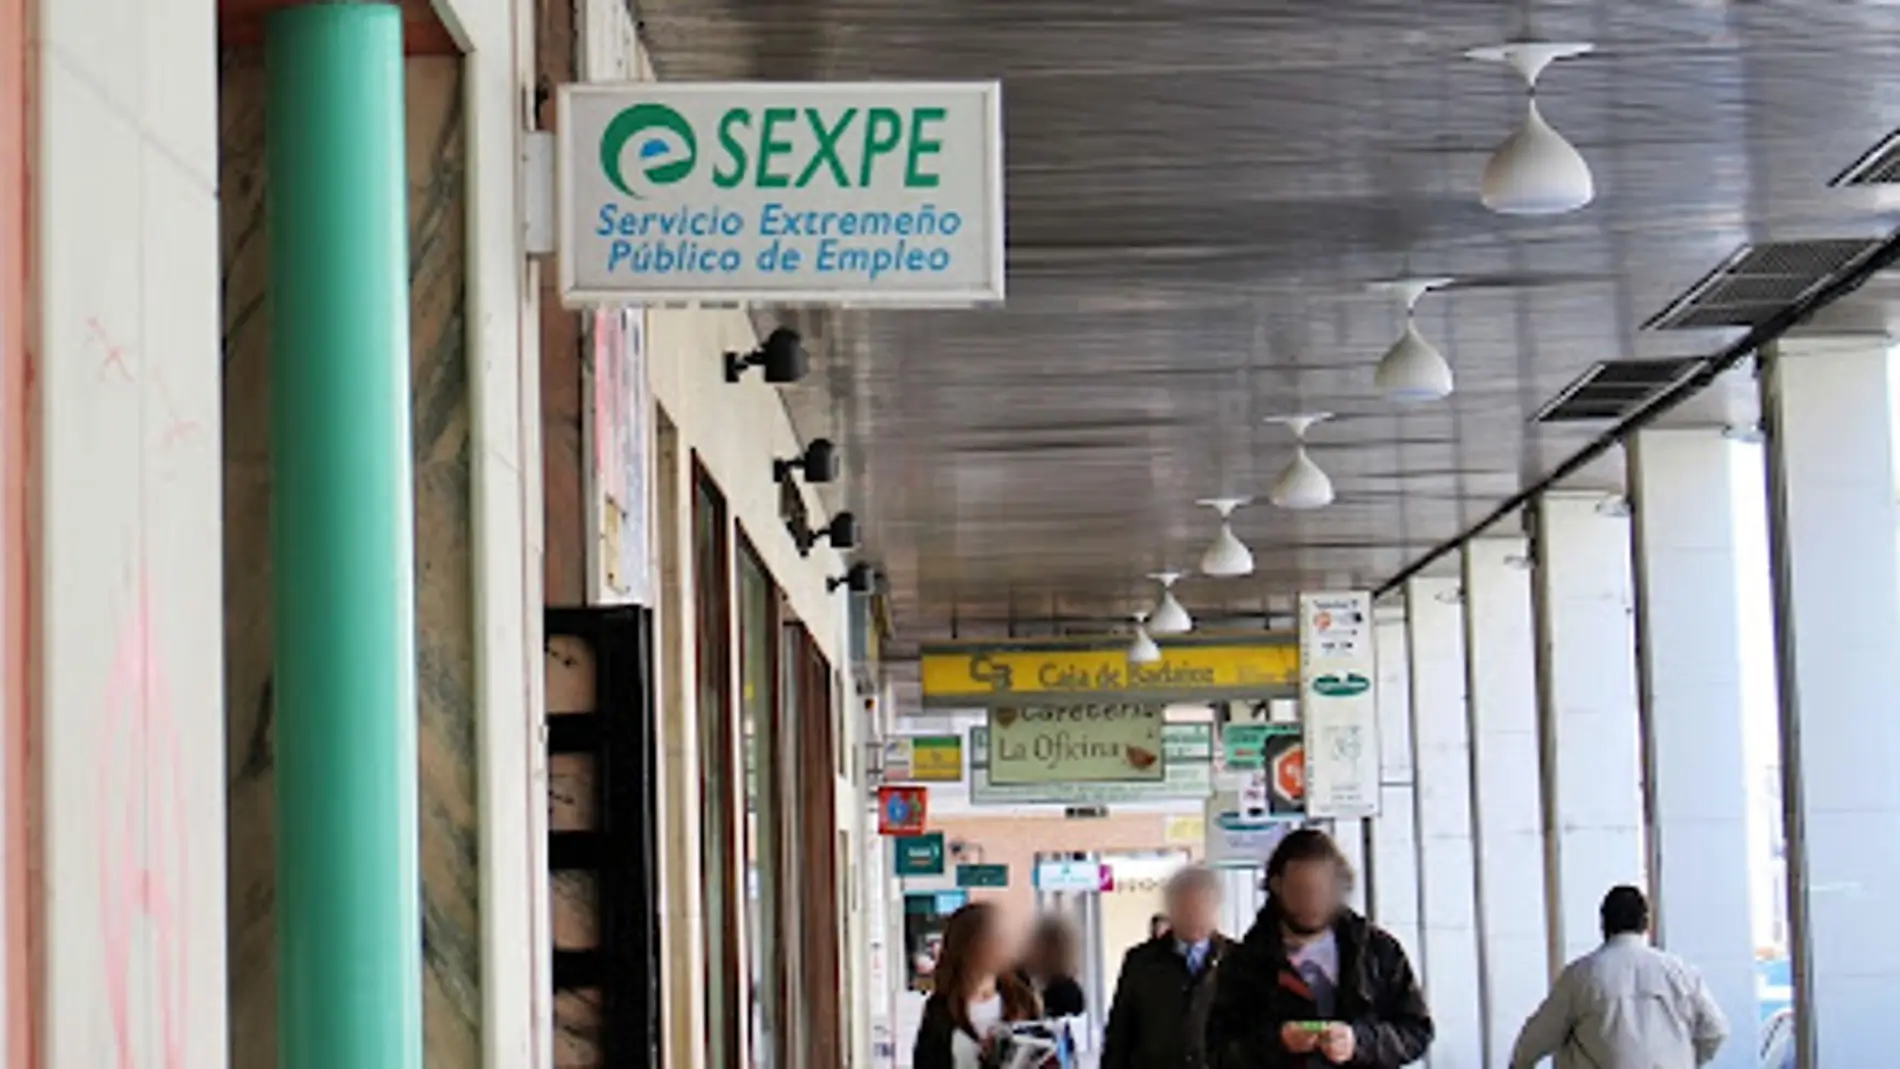 La provincia de Badajoz registra una tasa de actividad del 58,29 por ciento y una tasa de desempleo del 18,19 por ciento según la EPA